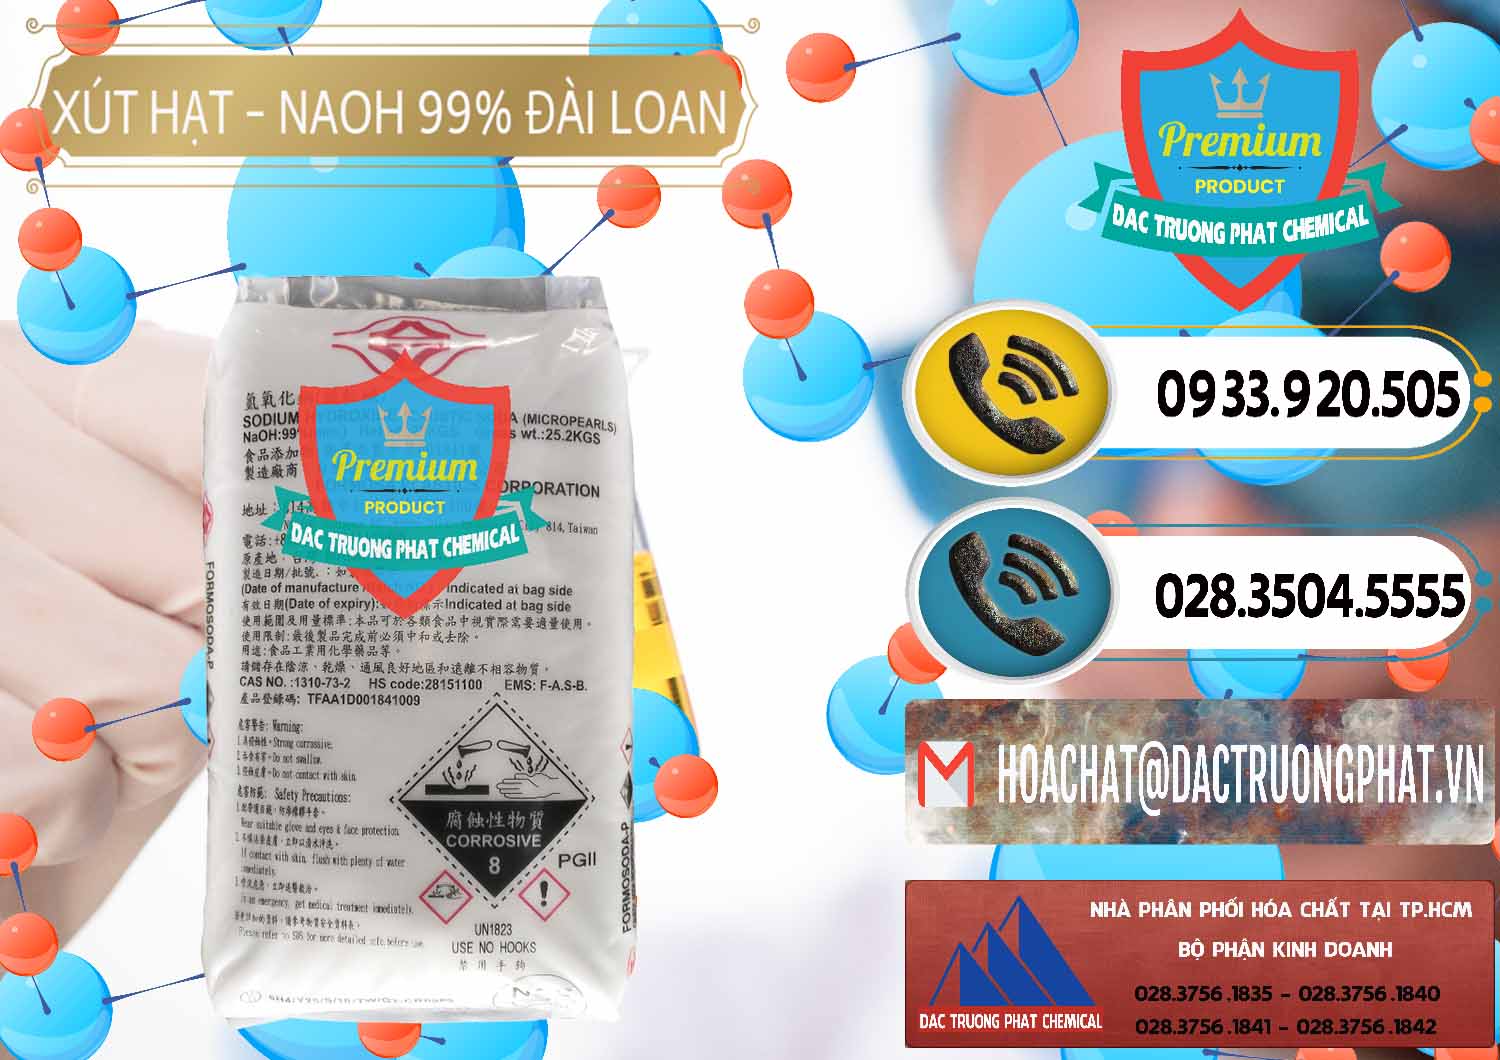 Cty chuyên bán & phân phối Xút Hạt - NaOH Bột 99% Đài Loan Taiwan Formosa - 0167 - Cty chuyên cung cấp ( bán ) hóa chất tại TP.HCM - hoachatdetnhuom.vn